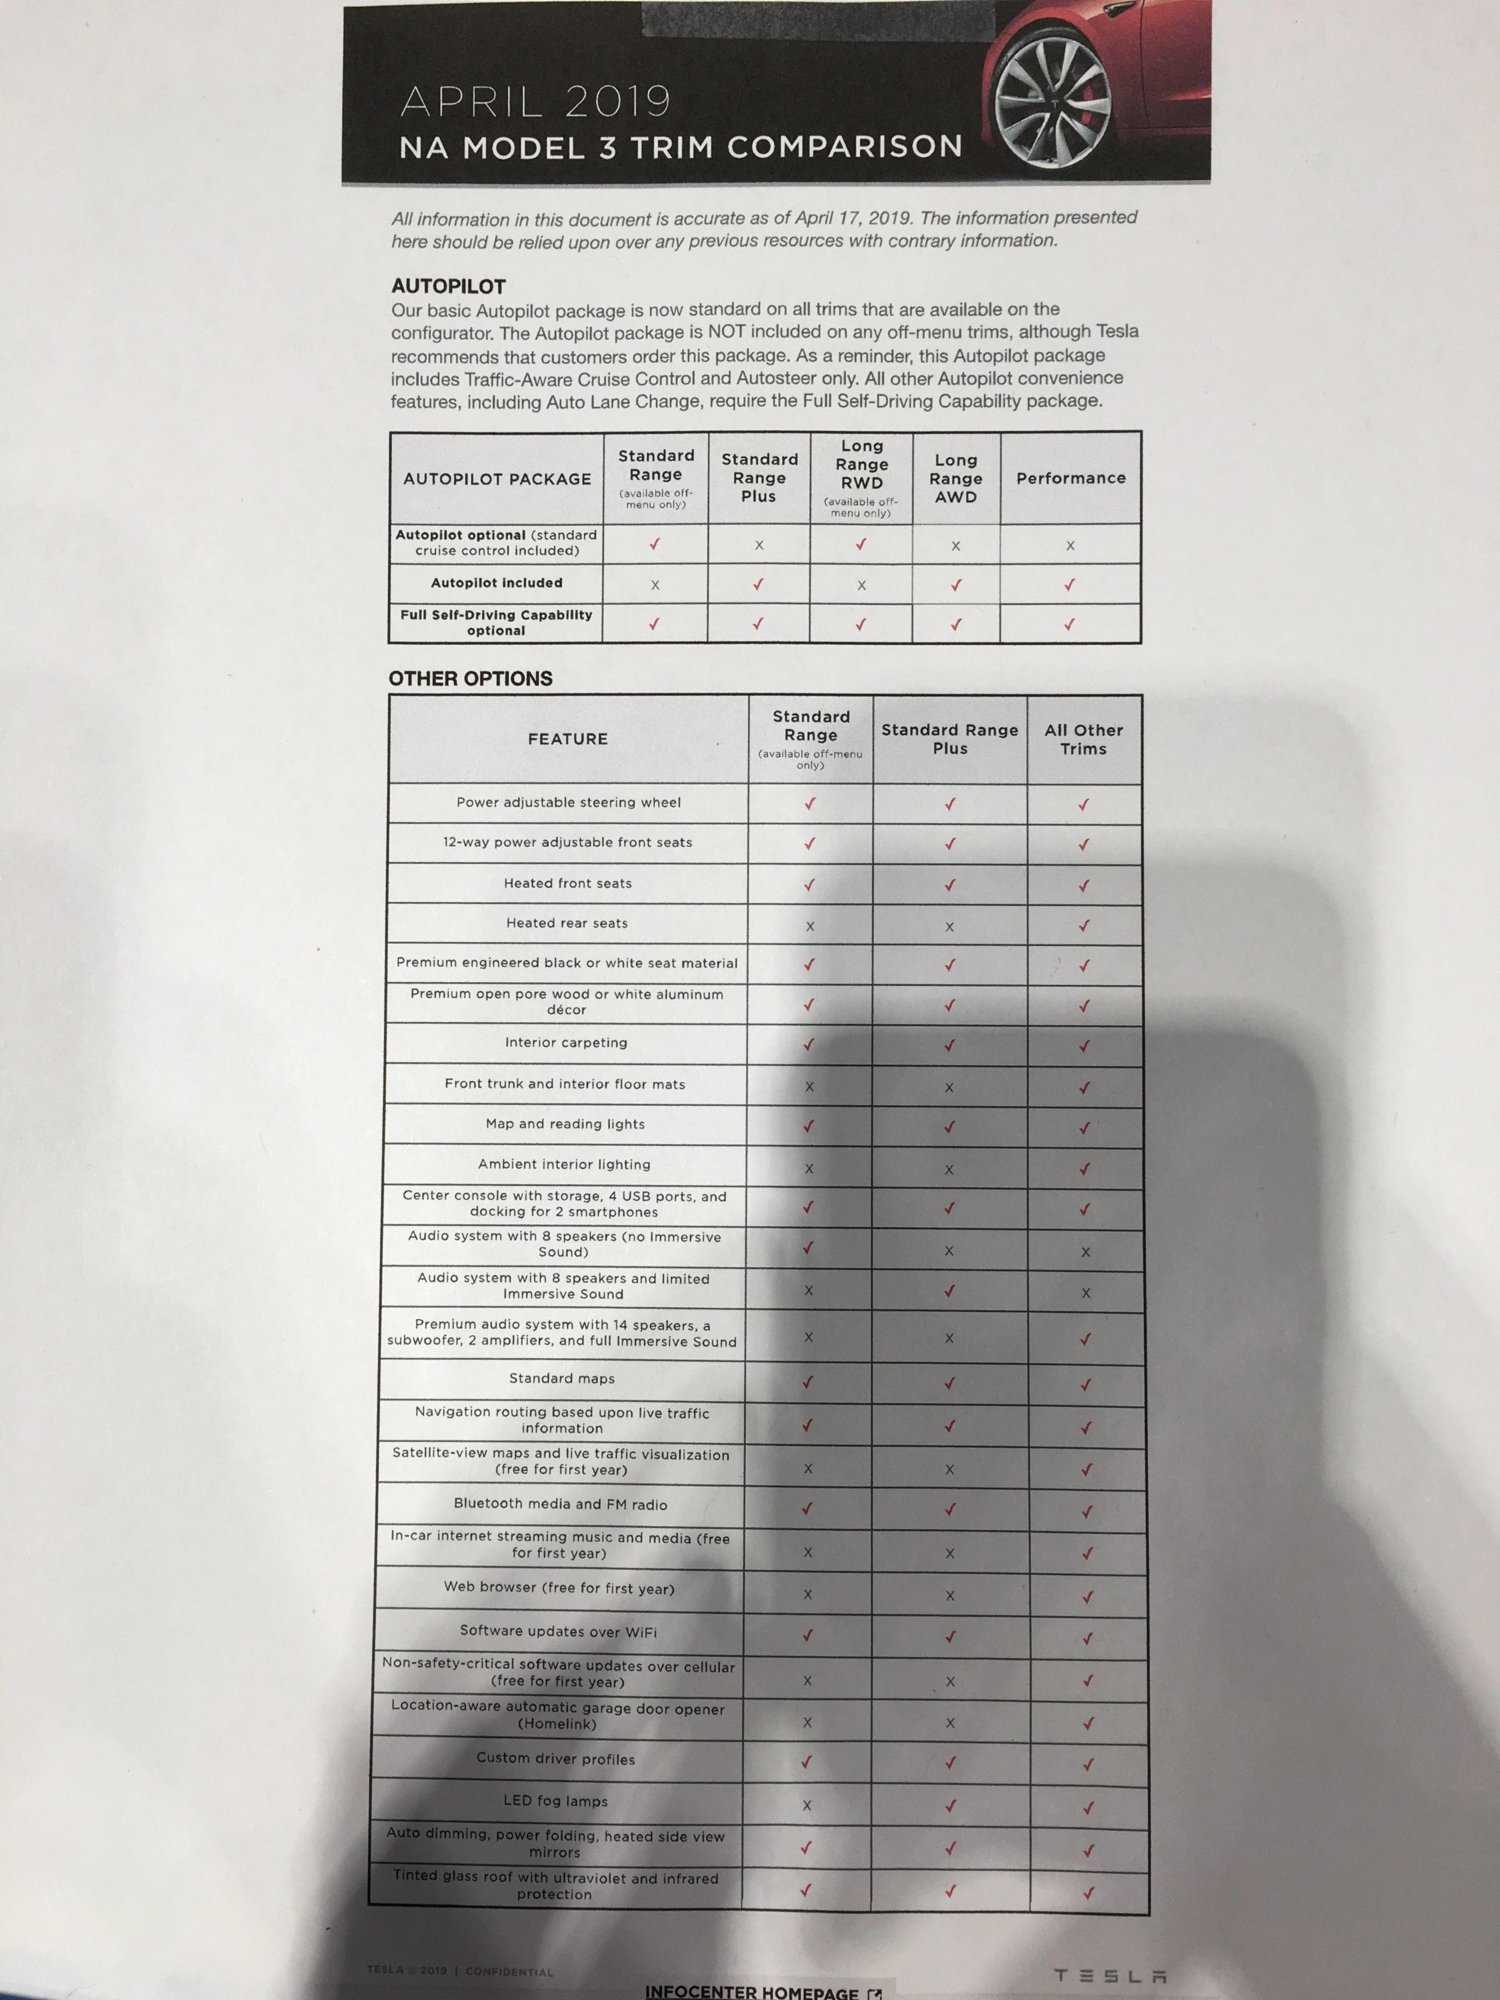 April 17, 2019 Tesla Model 3 Feature Comparison Sheet